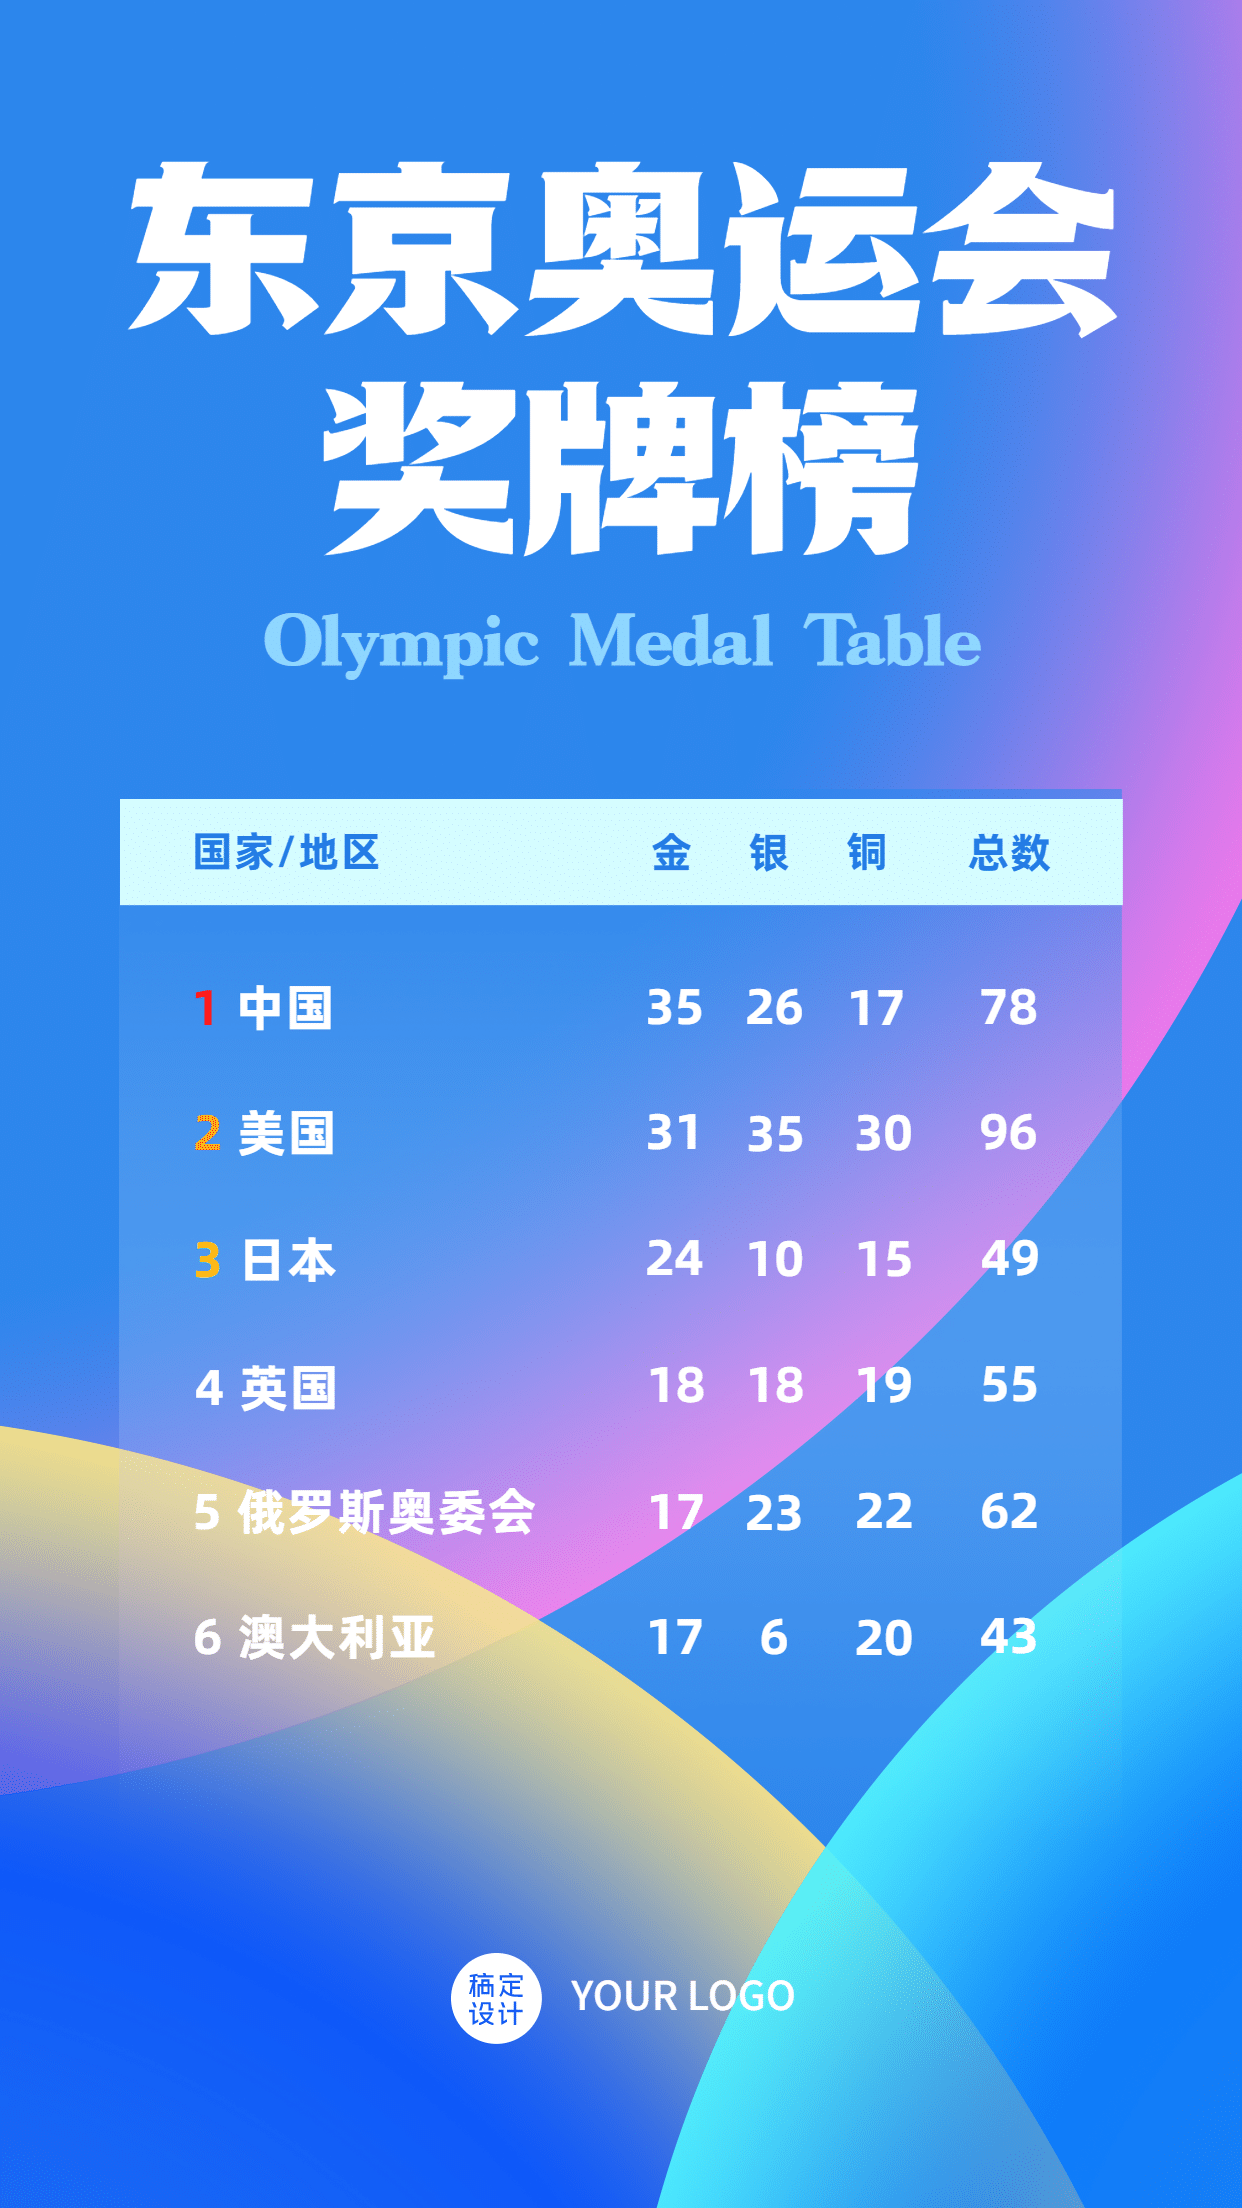 东京奥运会奖牌榜手机海报预览效果